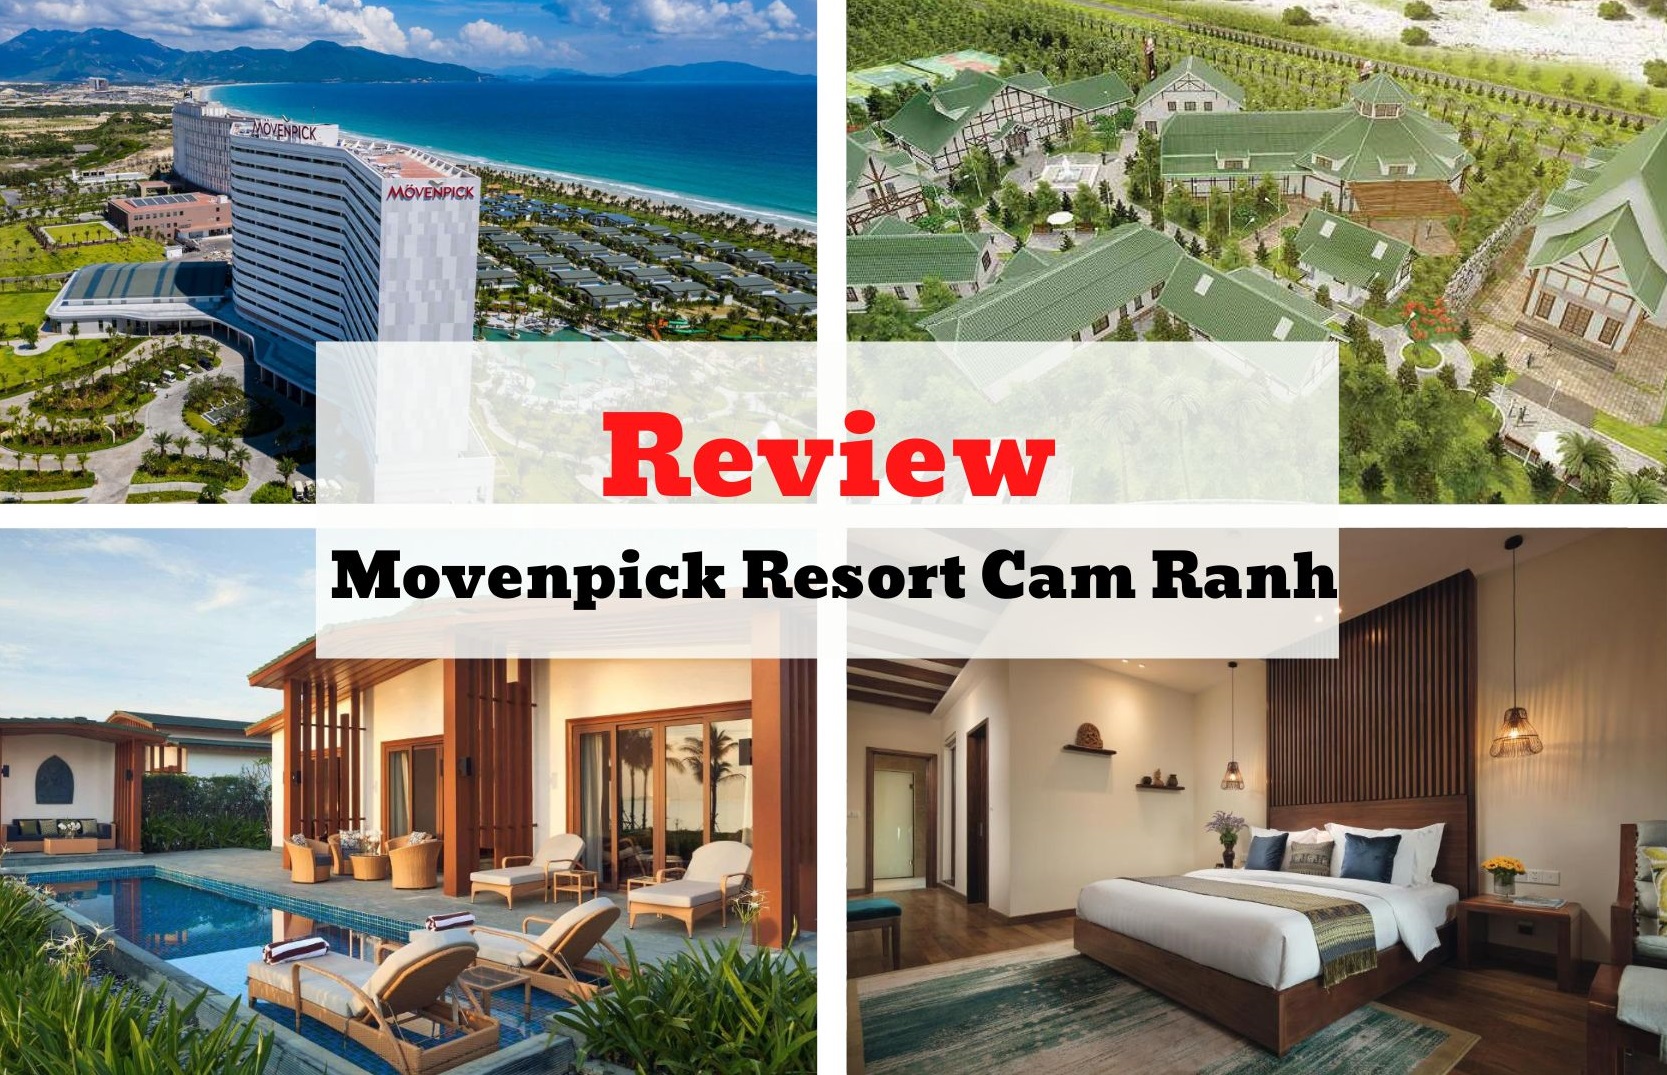 Review Movenpick Resort Cam Ranh - Thiết kế hiện đại mang âm hưởng Chăm Pa độc đáo